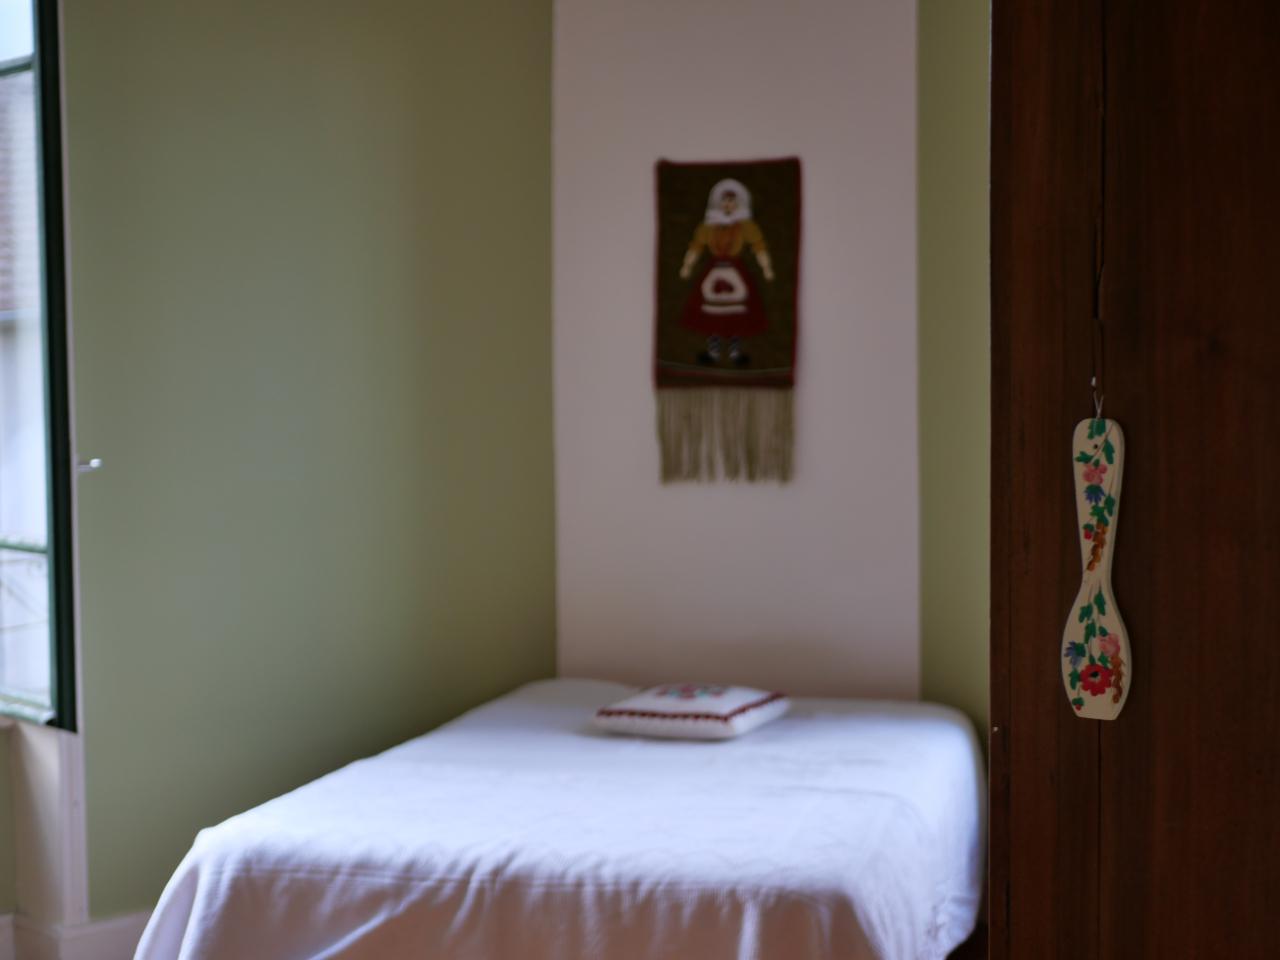 Hôte GreenGo: Chambres à l'Hôtel des Touristes - Image 6